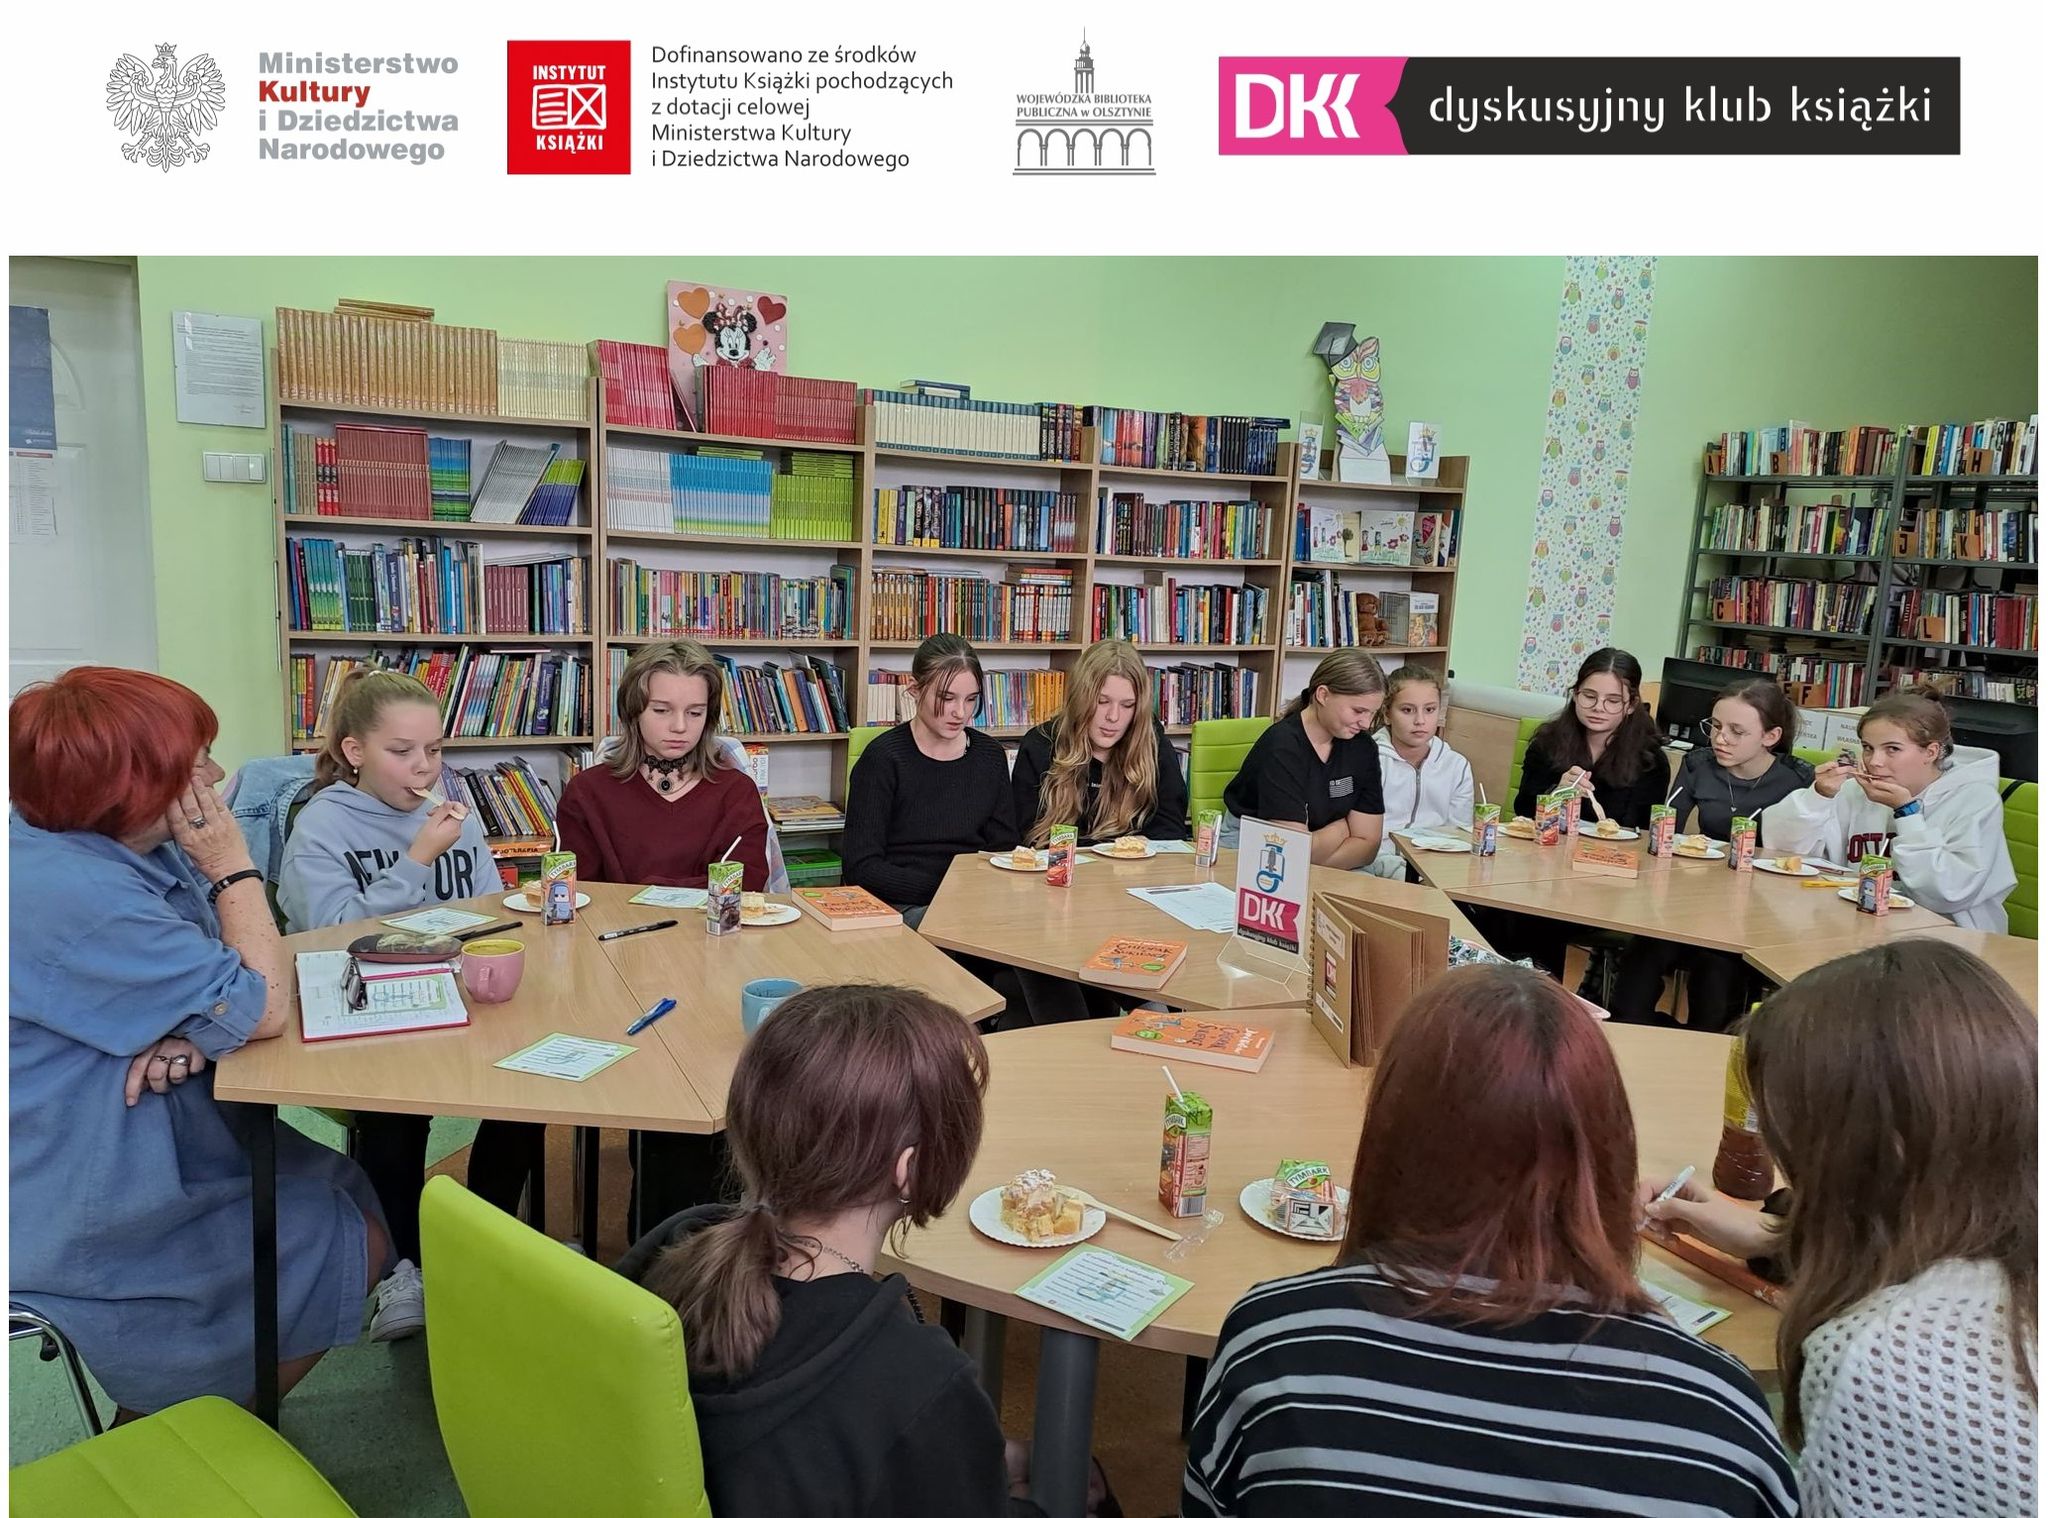 członkowie klubu dkk podczas spotkania w bibliotece szkolnej siedzą przy stolikach razem z osobą prowadzącą klub, na sole leżą książki i poczęstunek